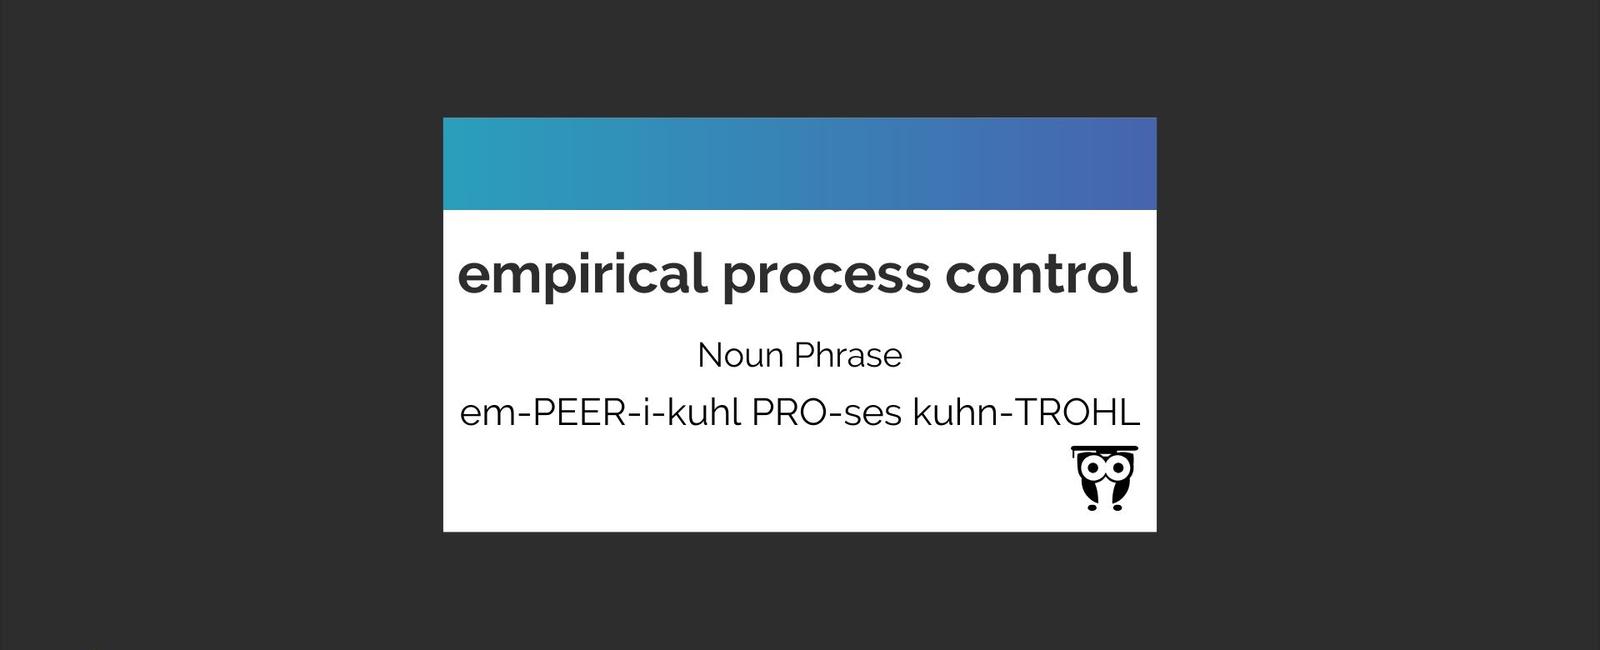 Empirical Process Control